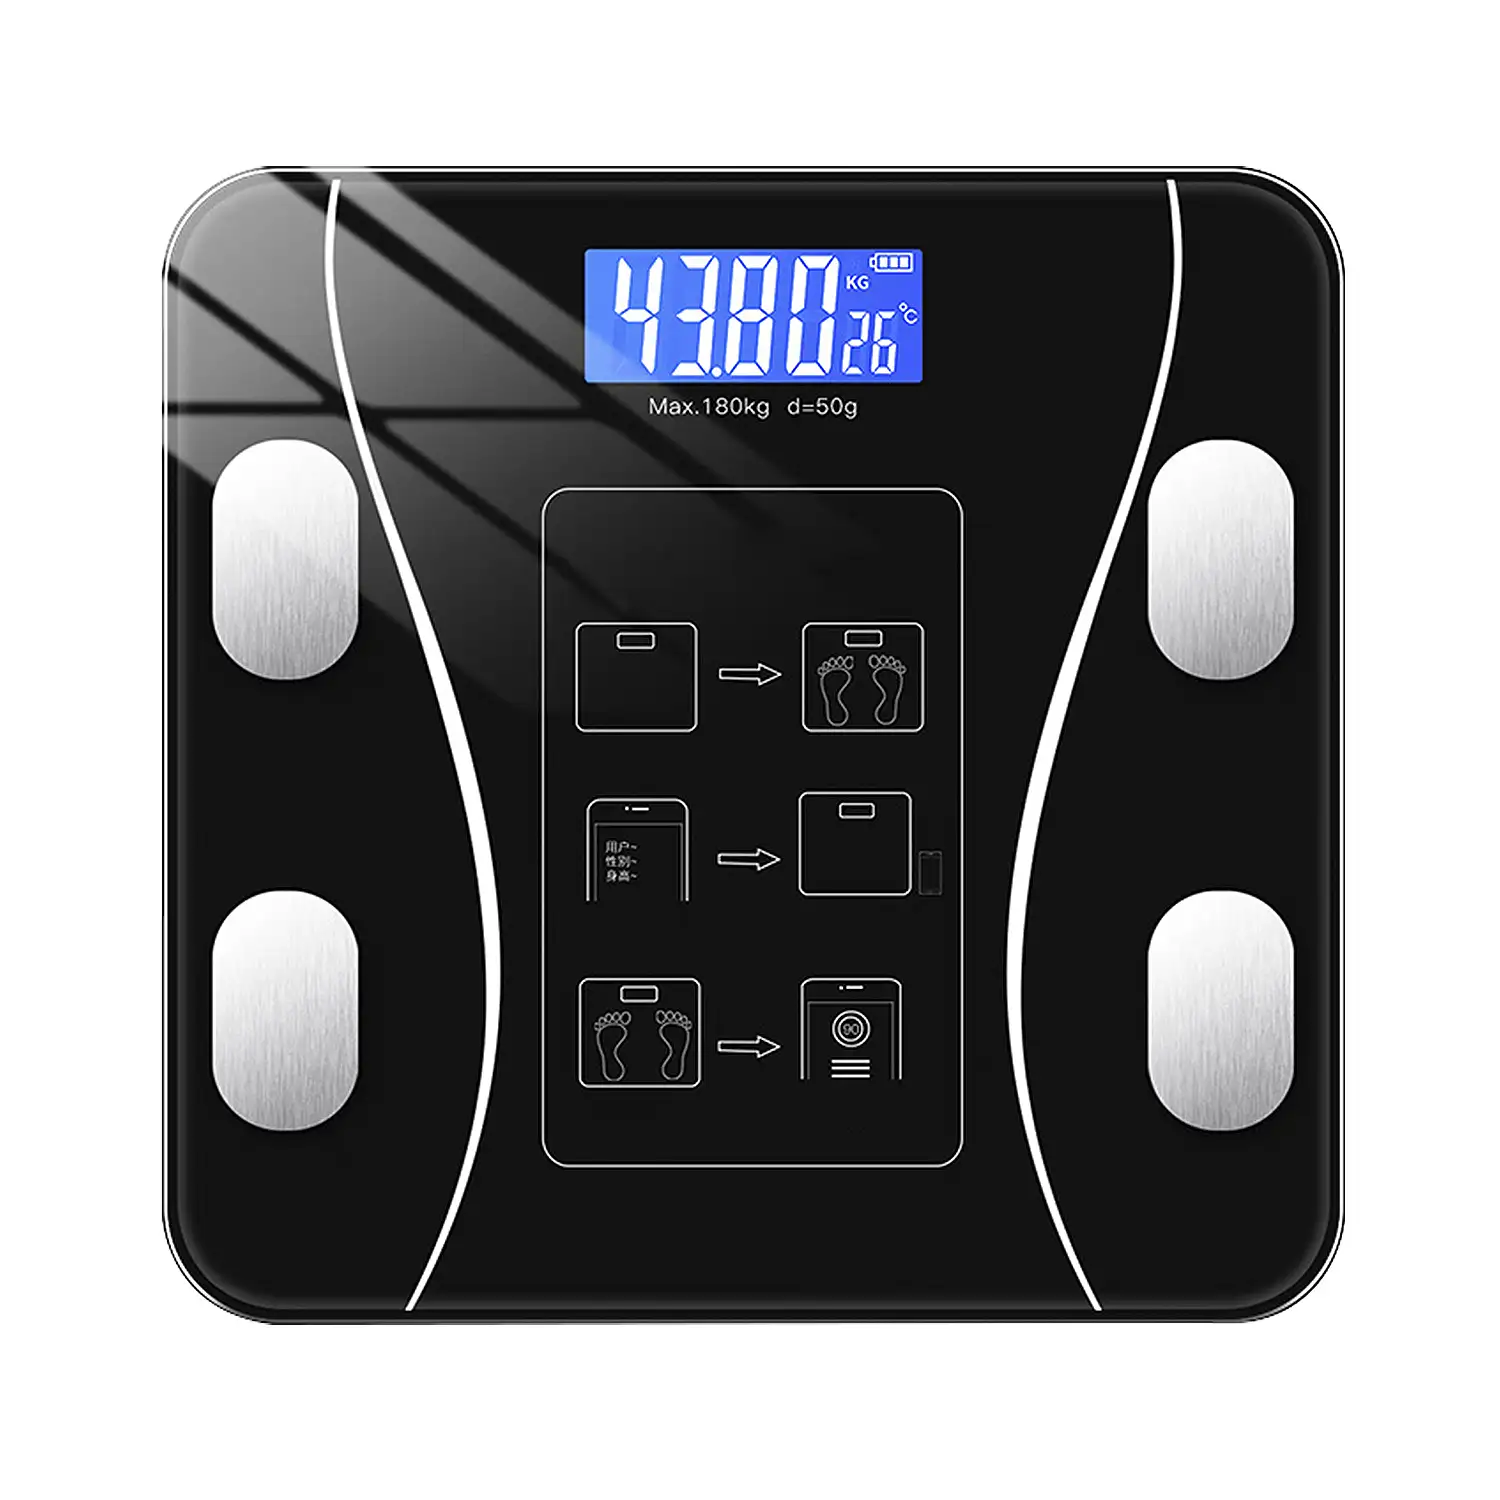 Báscula digital bluetooth con aplicación de control. Display LCD y termómetro. Batería recargable.